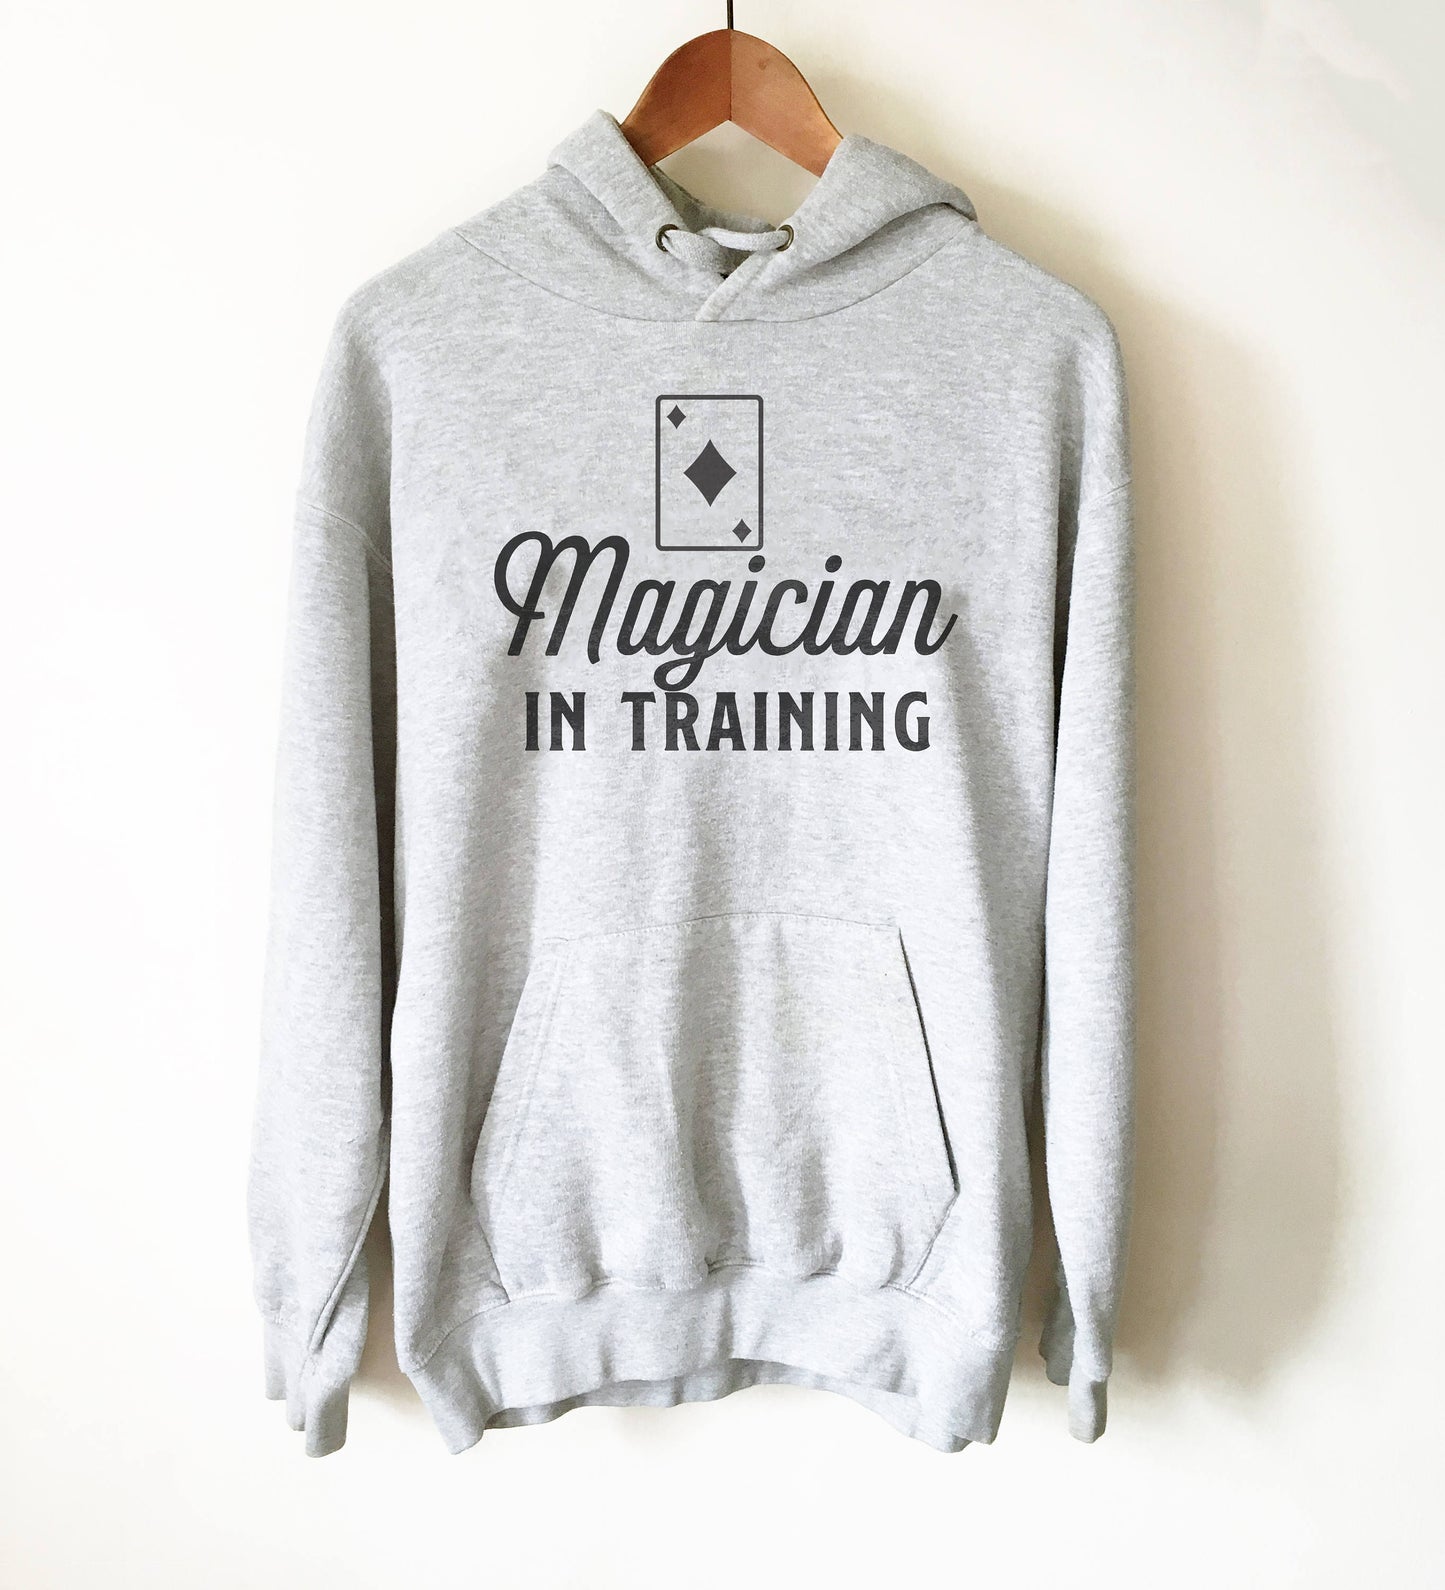 Magician In Training Hoodie - Magician Shirt, Magician, Magic Shirt, Illusionist, Illusion, Tricks, Magic